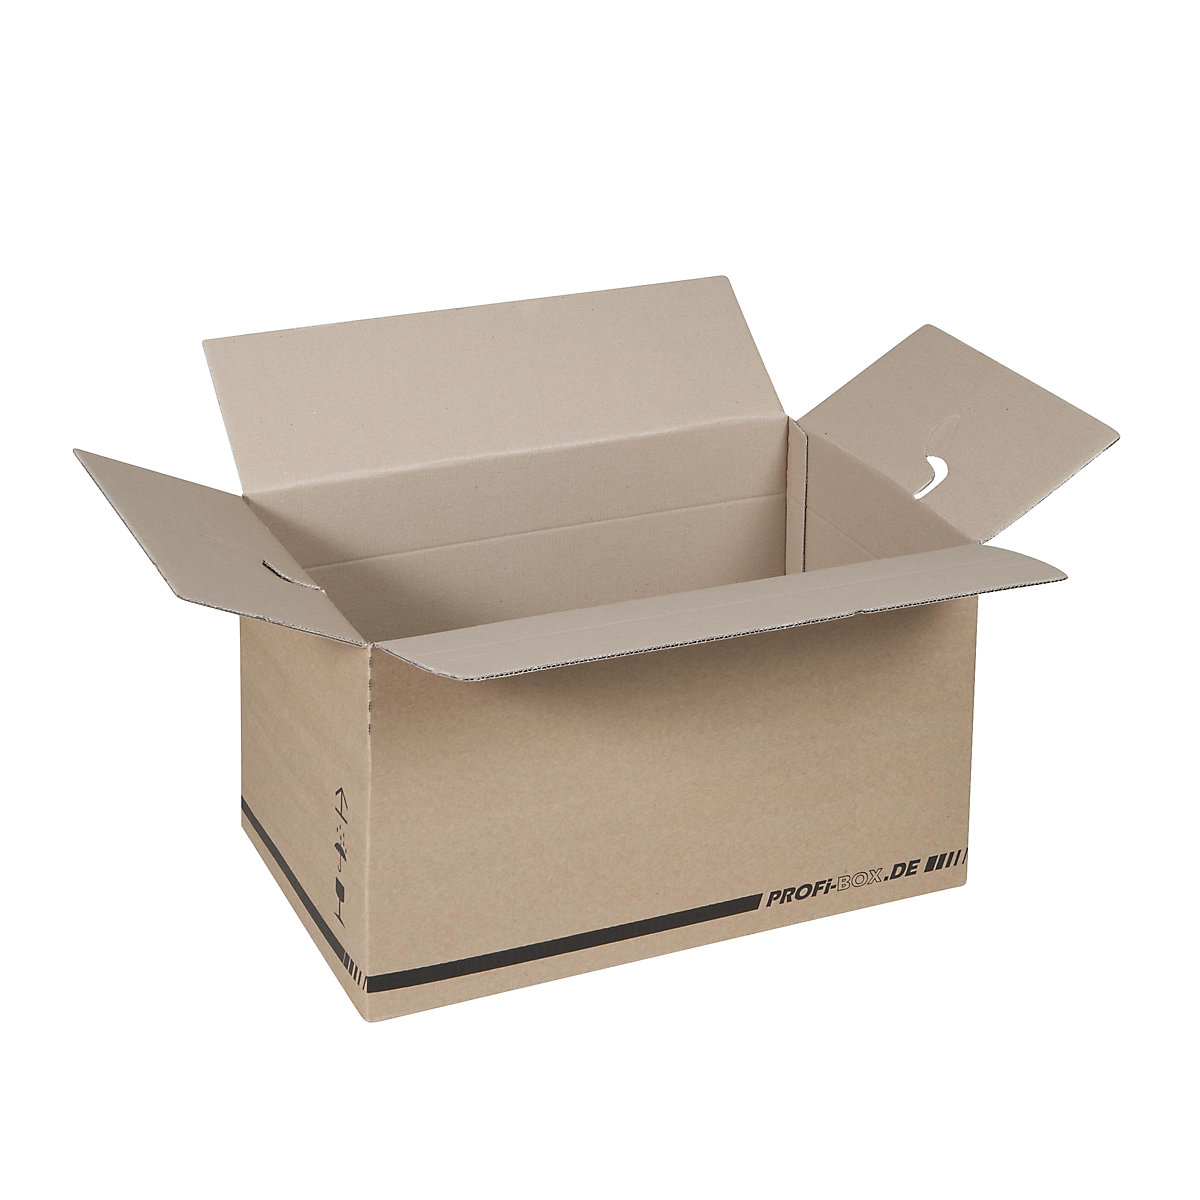 Profesionalne kutije, od 2-valnog kartona, unutarnje dimenzije 476 x 276 x 272 mm, FEFCO 0701, pak. 50 kom.-2